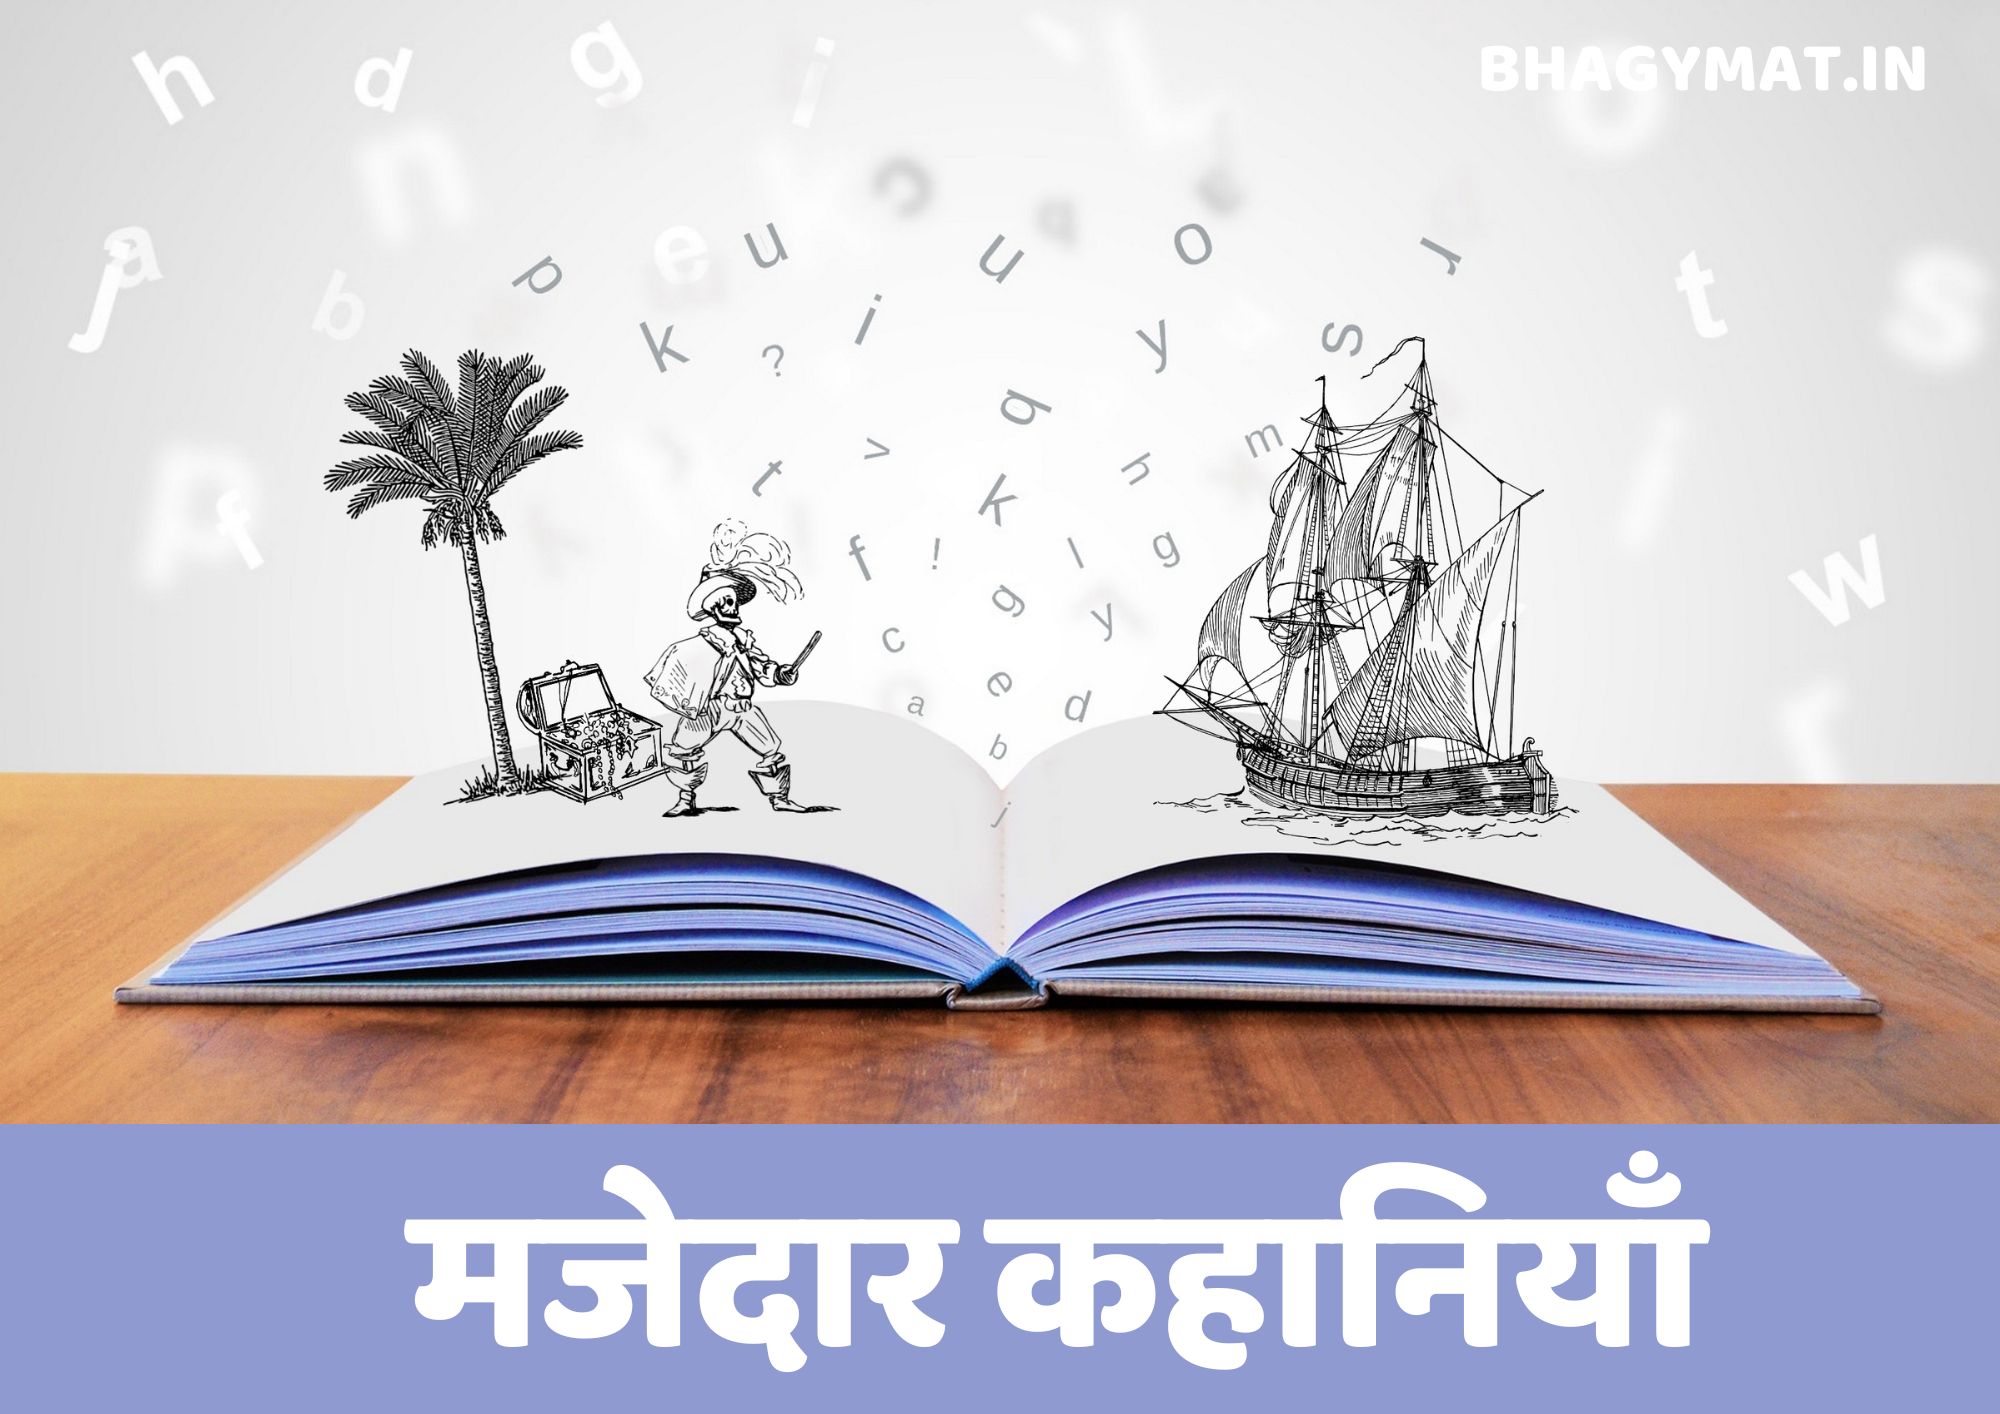 मजेदार कहानी | मजेदार कहानियाँ | मजेदार स्टोरी इन हिंदी | Majedar Kahaniya In Hindi | Majedar Kahani | Kahani Majedar | Funny Story in Hindi